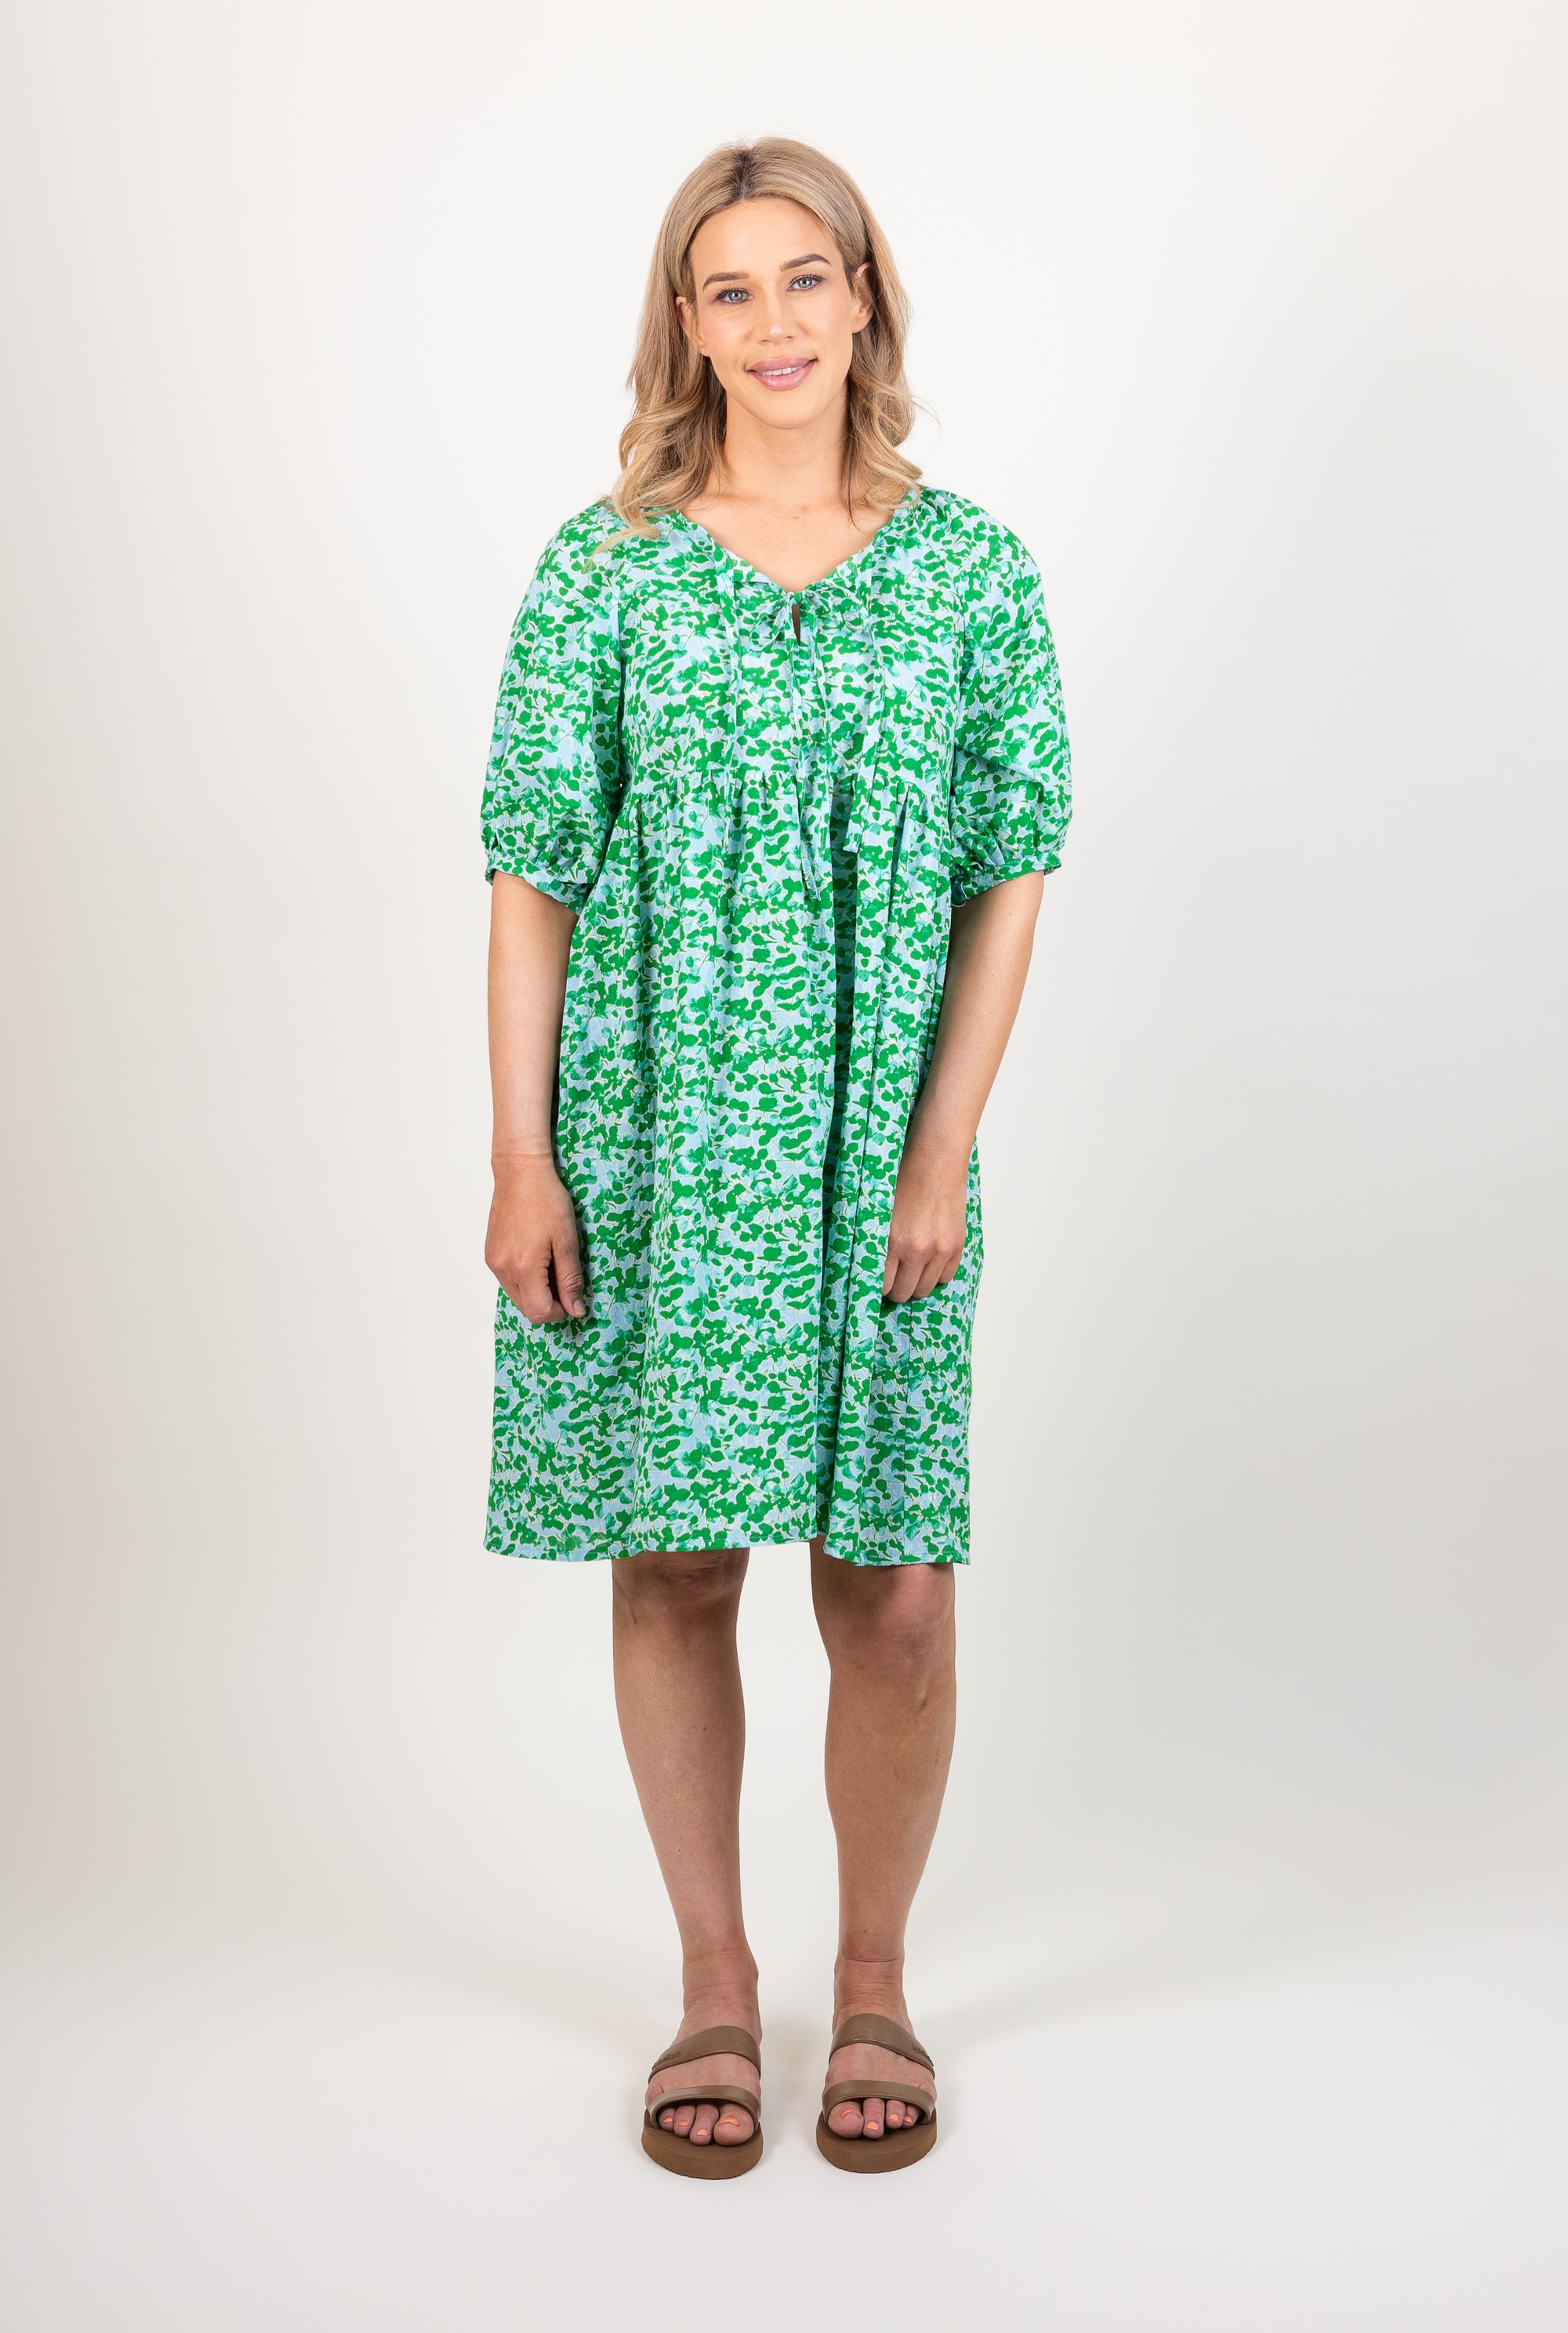 Ames Store Summer Cotton Seersucker Dress Green Blue Print